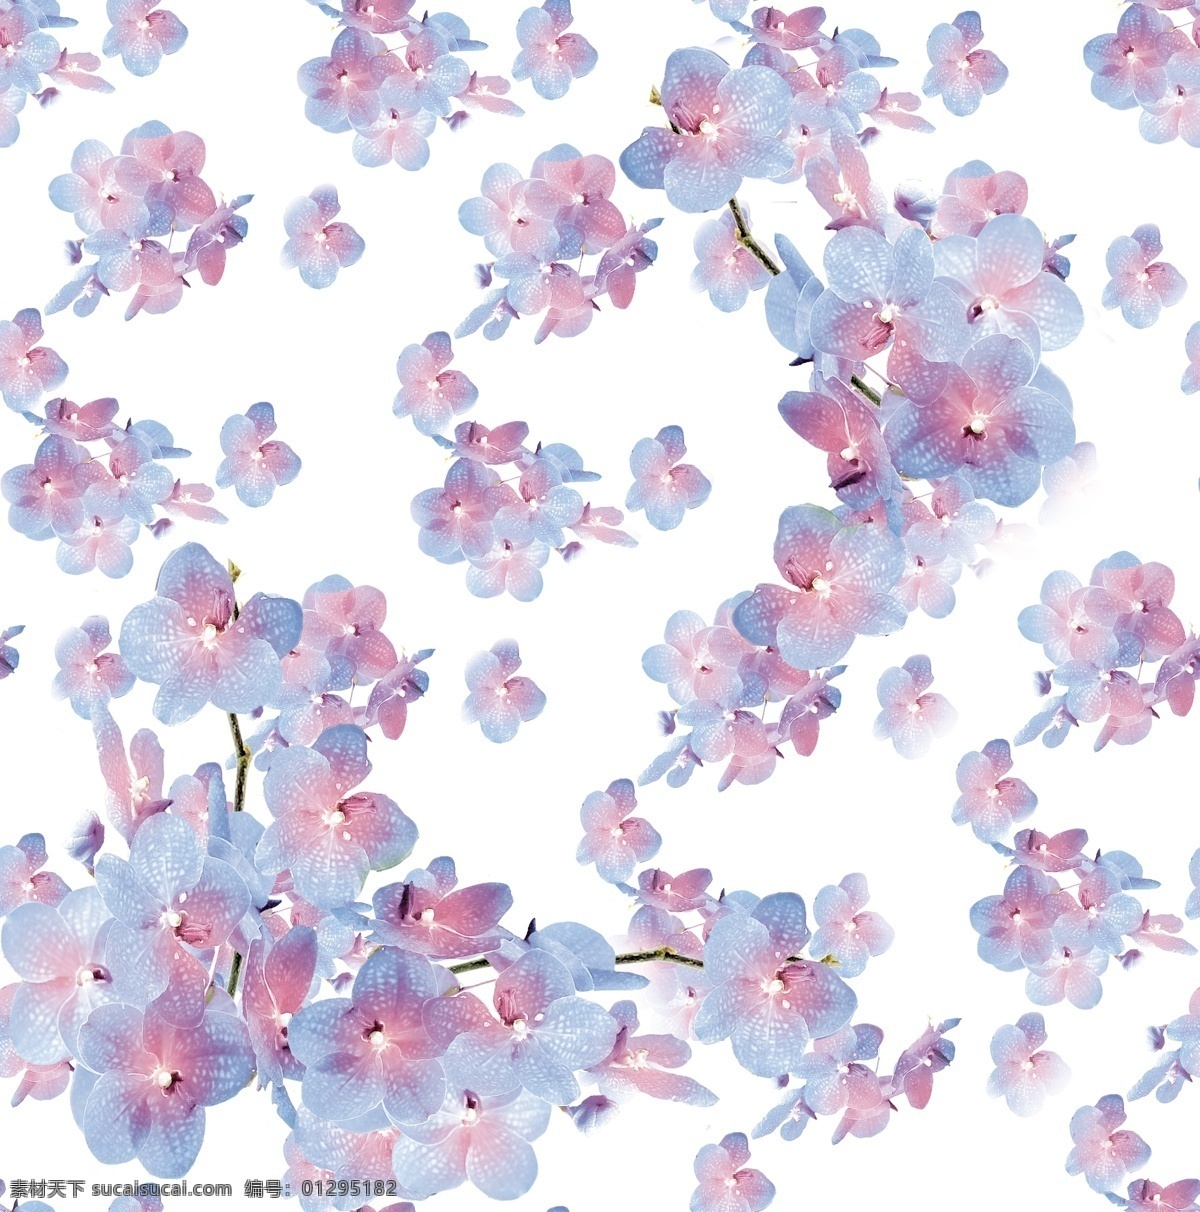 高清 矢量 分层图 蝴蝶兰 花朵 数码印花 底纹边框 花边花纹